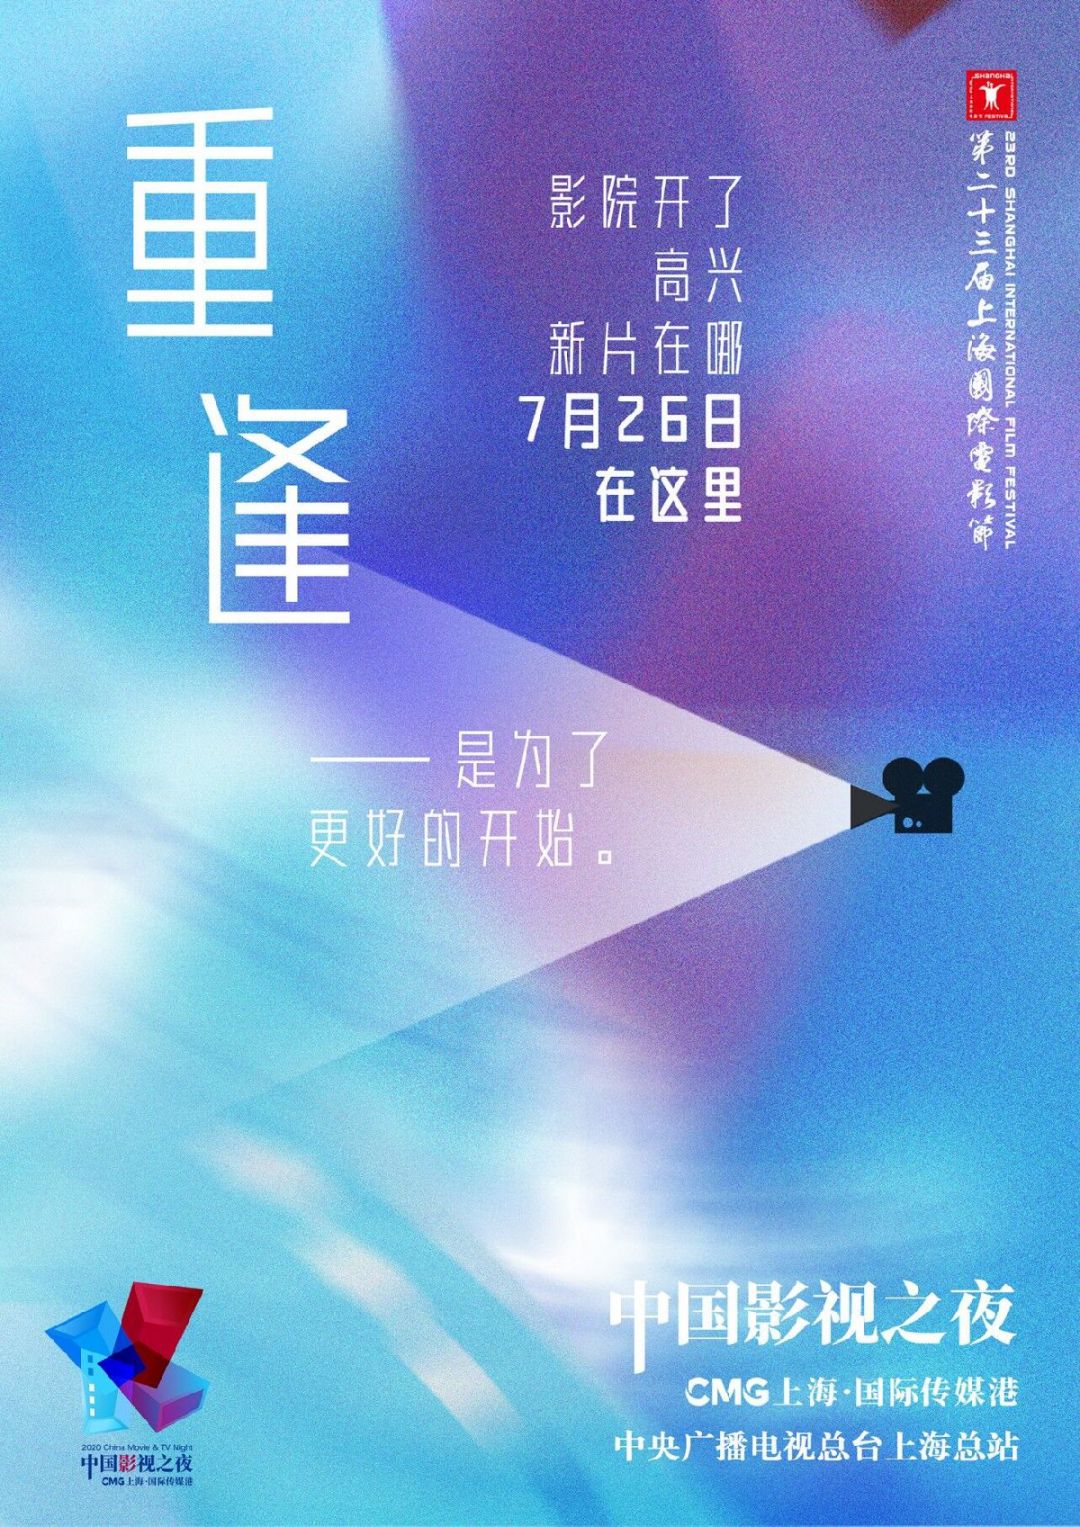 2020上海电影节中国影视之夜时间+直播入口